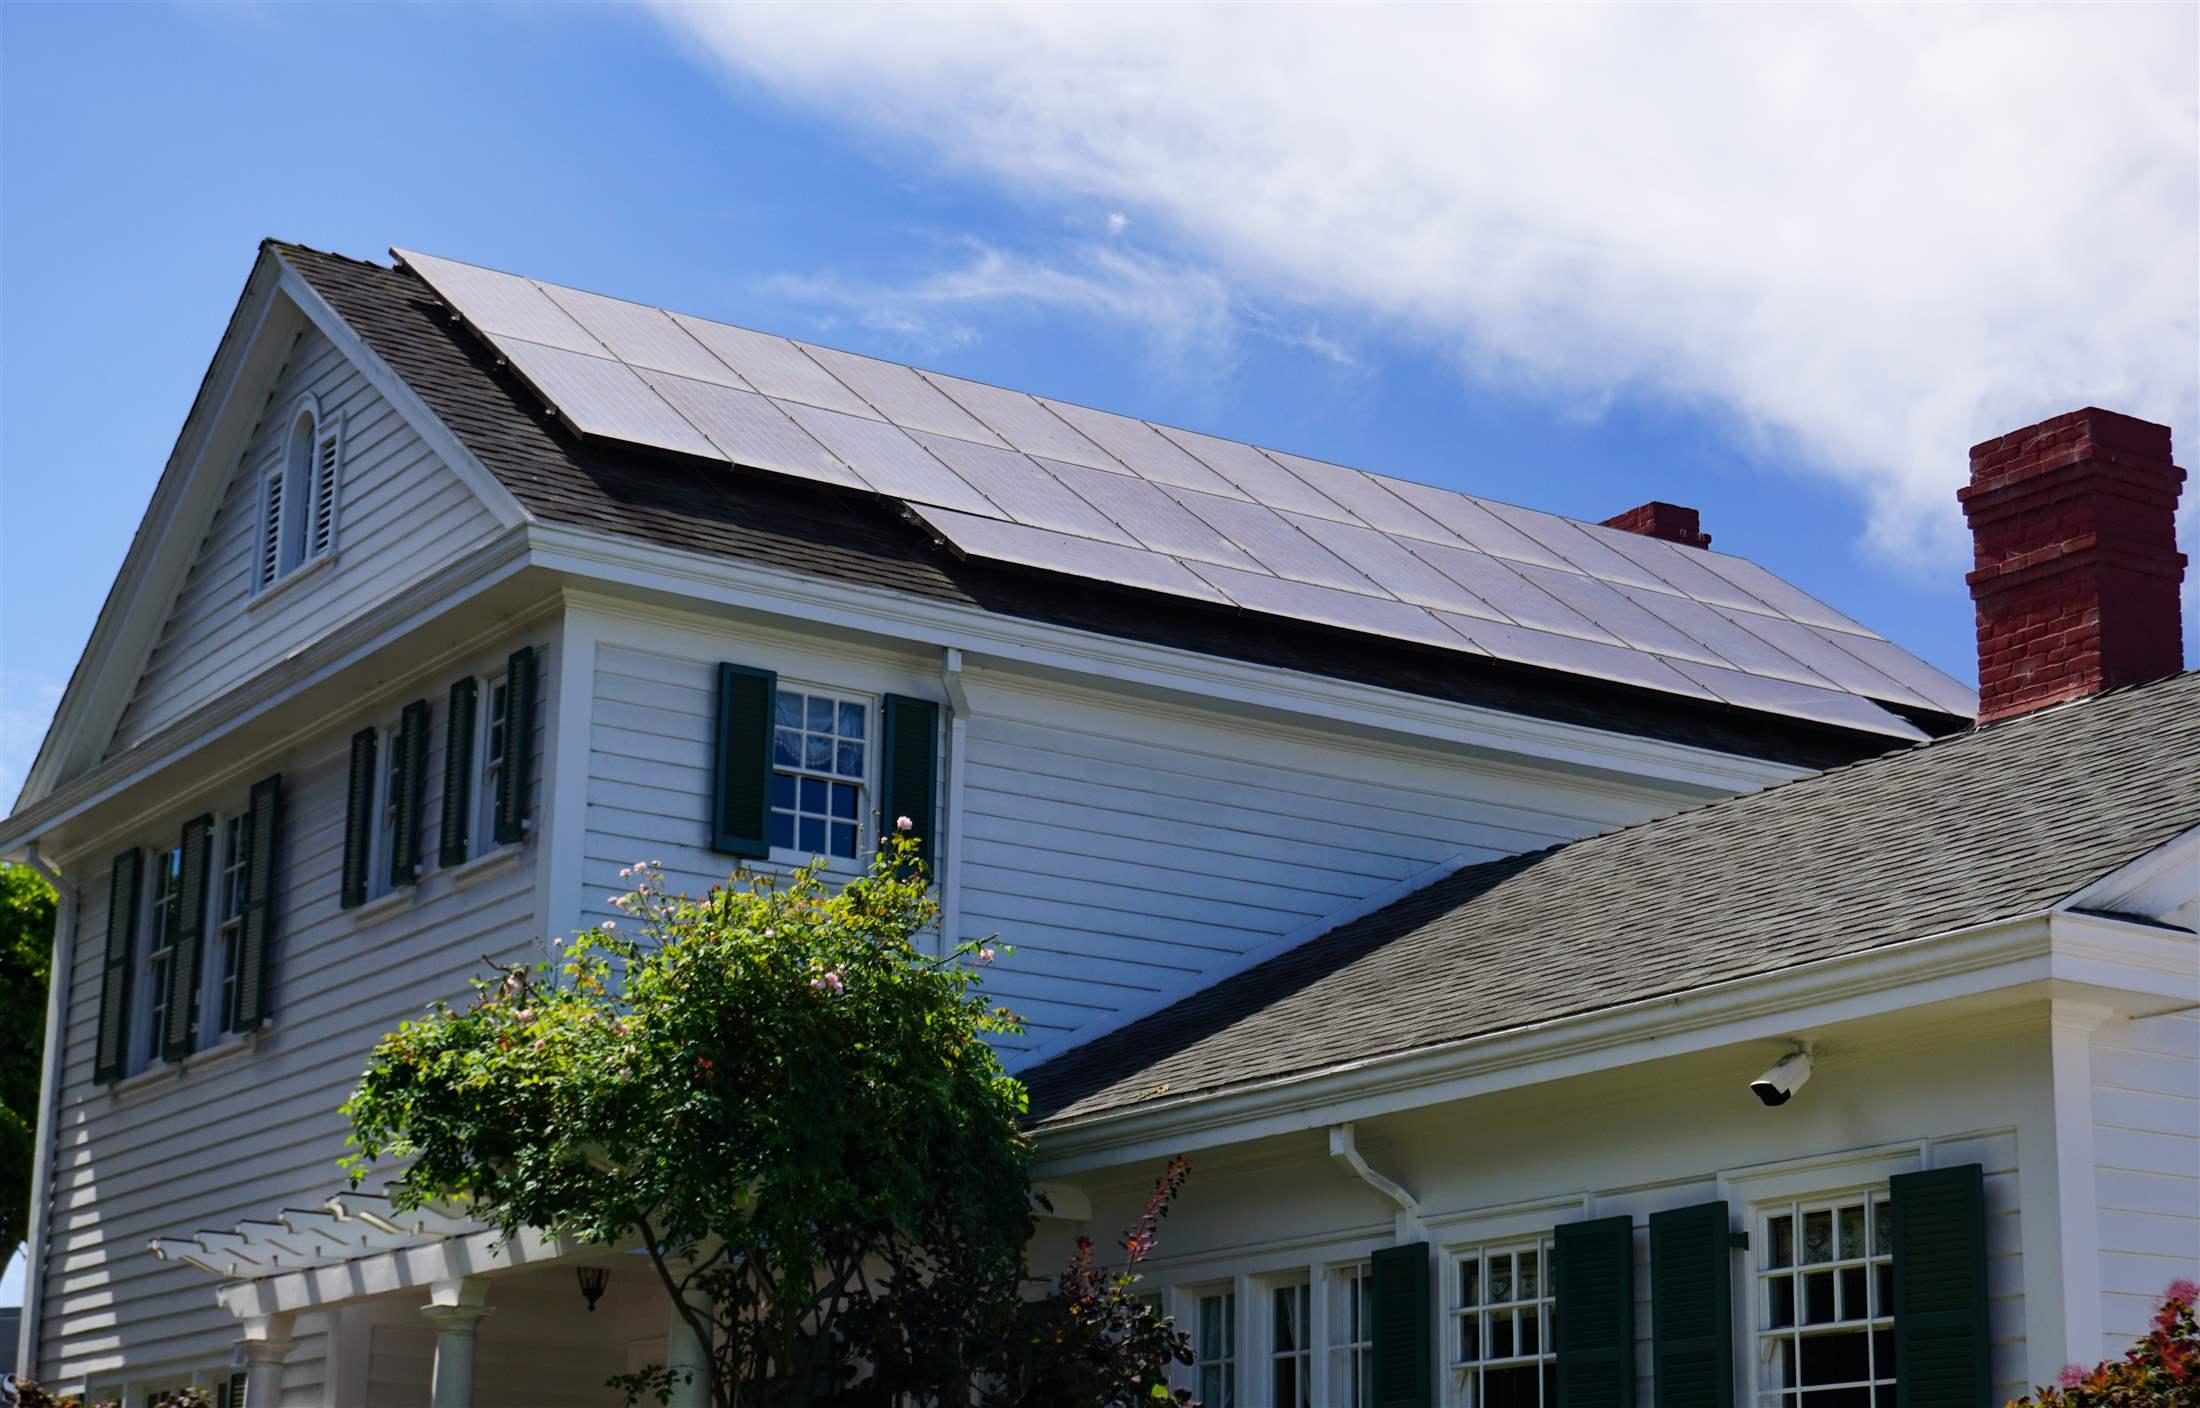 Energy Efficient Massachusetts Home Using Solar Panels